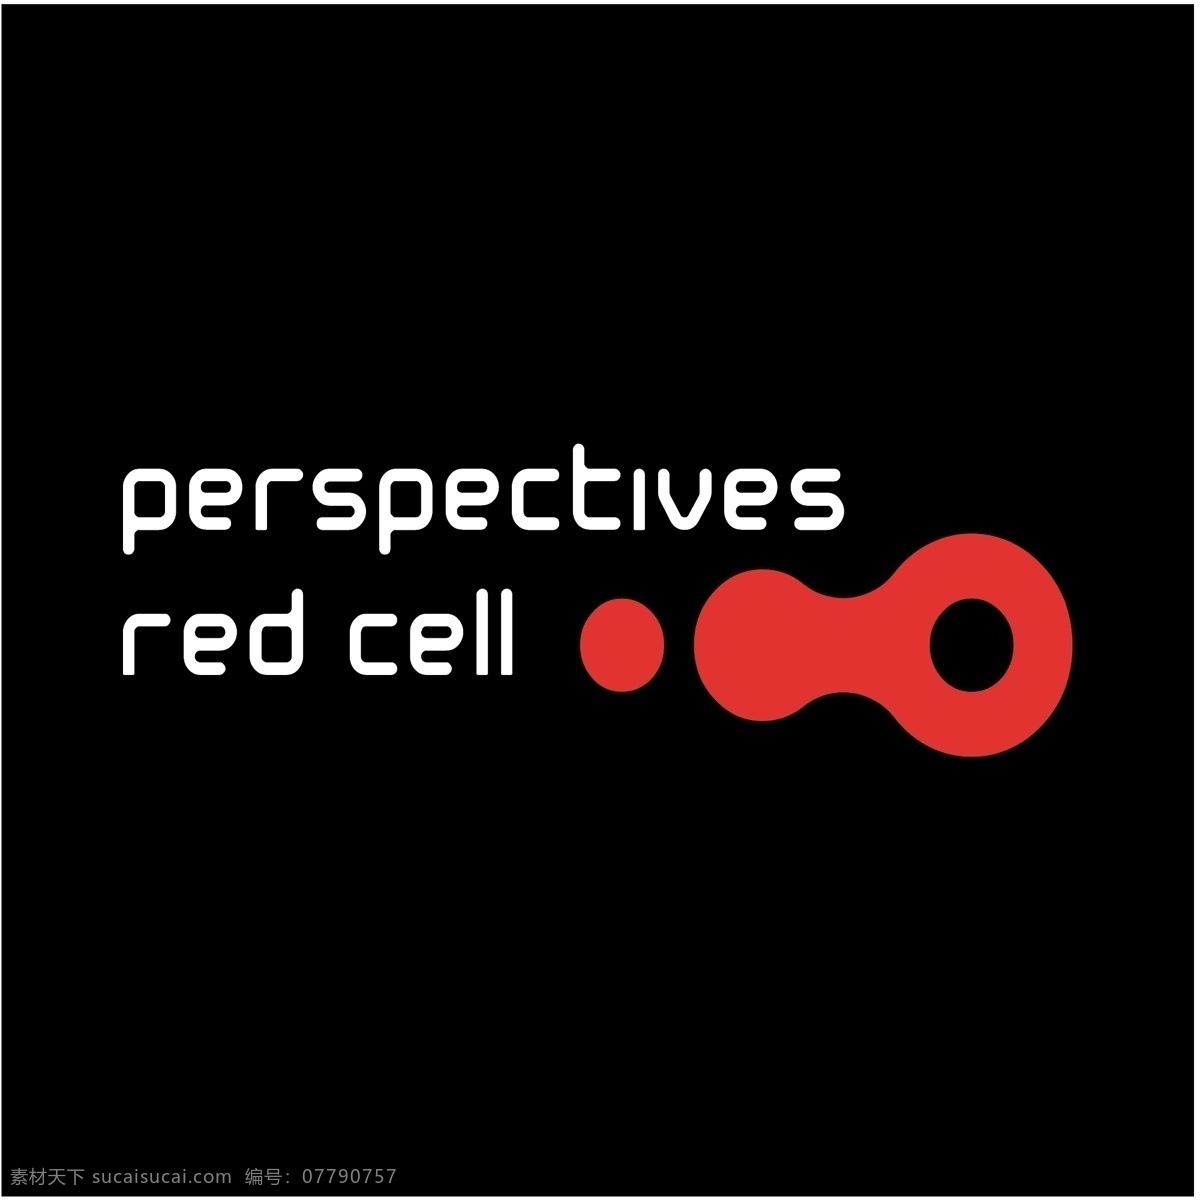 红细胞的观点 自由 视角 红细胞 标志 观点 黑色